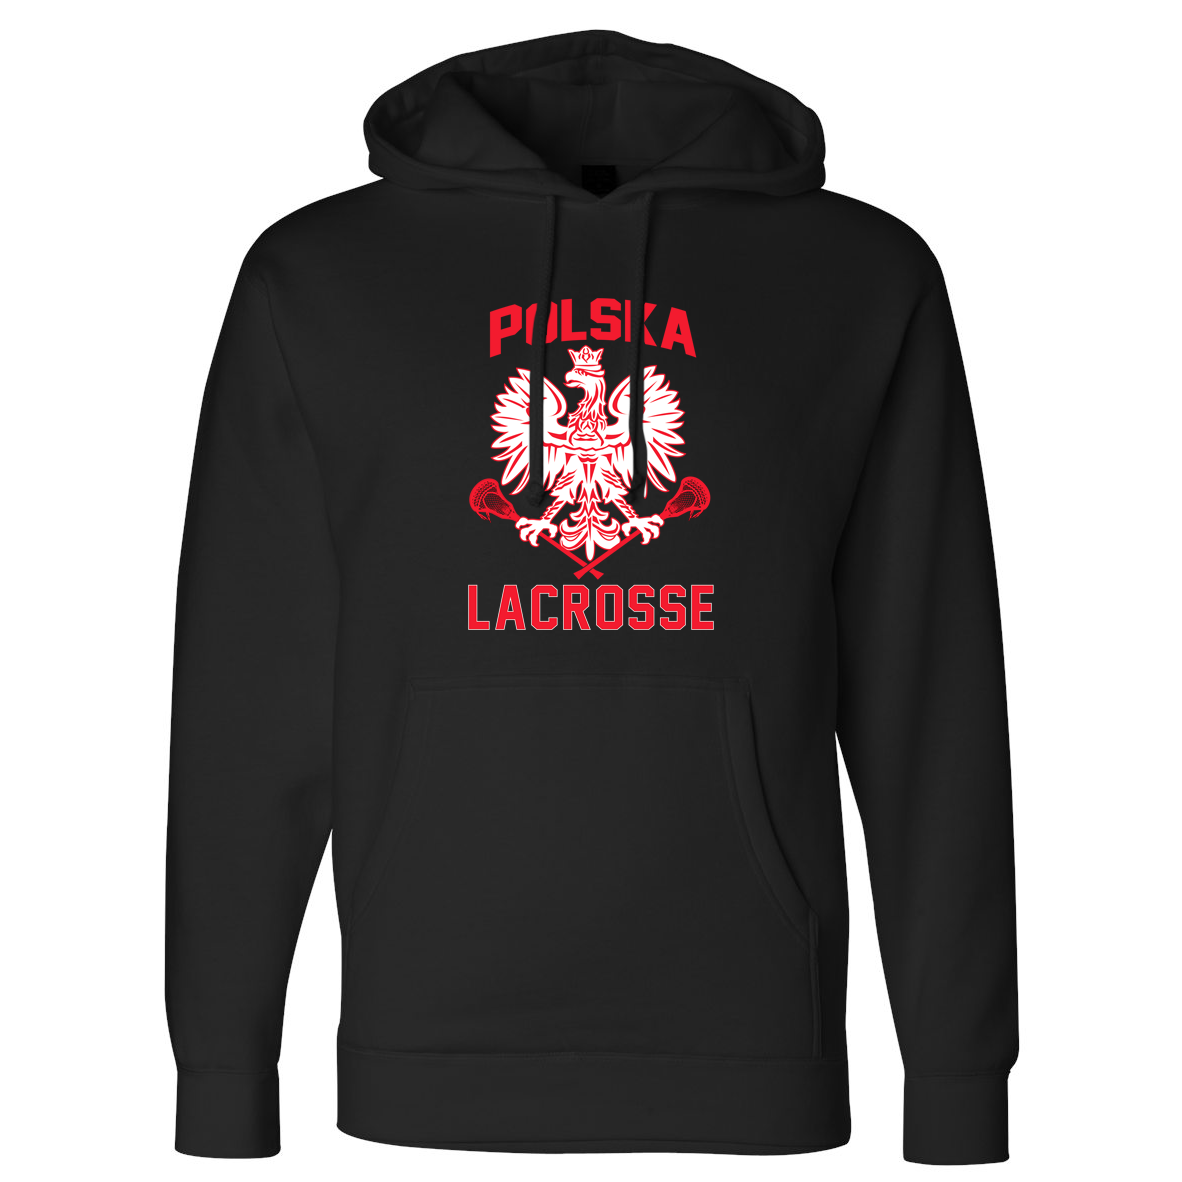 Polska Lacrosse Heavyweight Sweatshirt